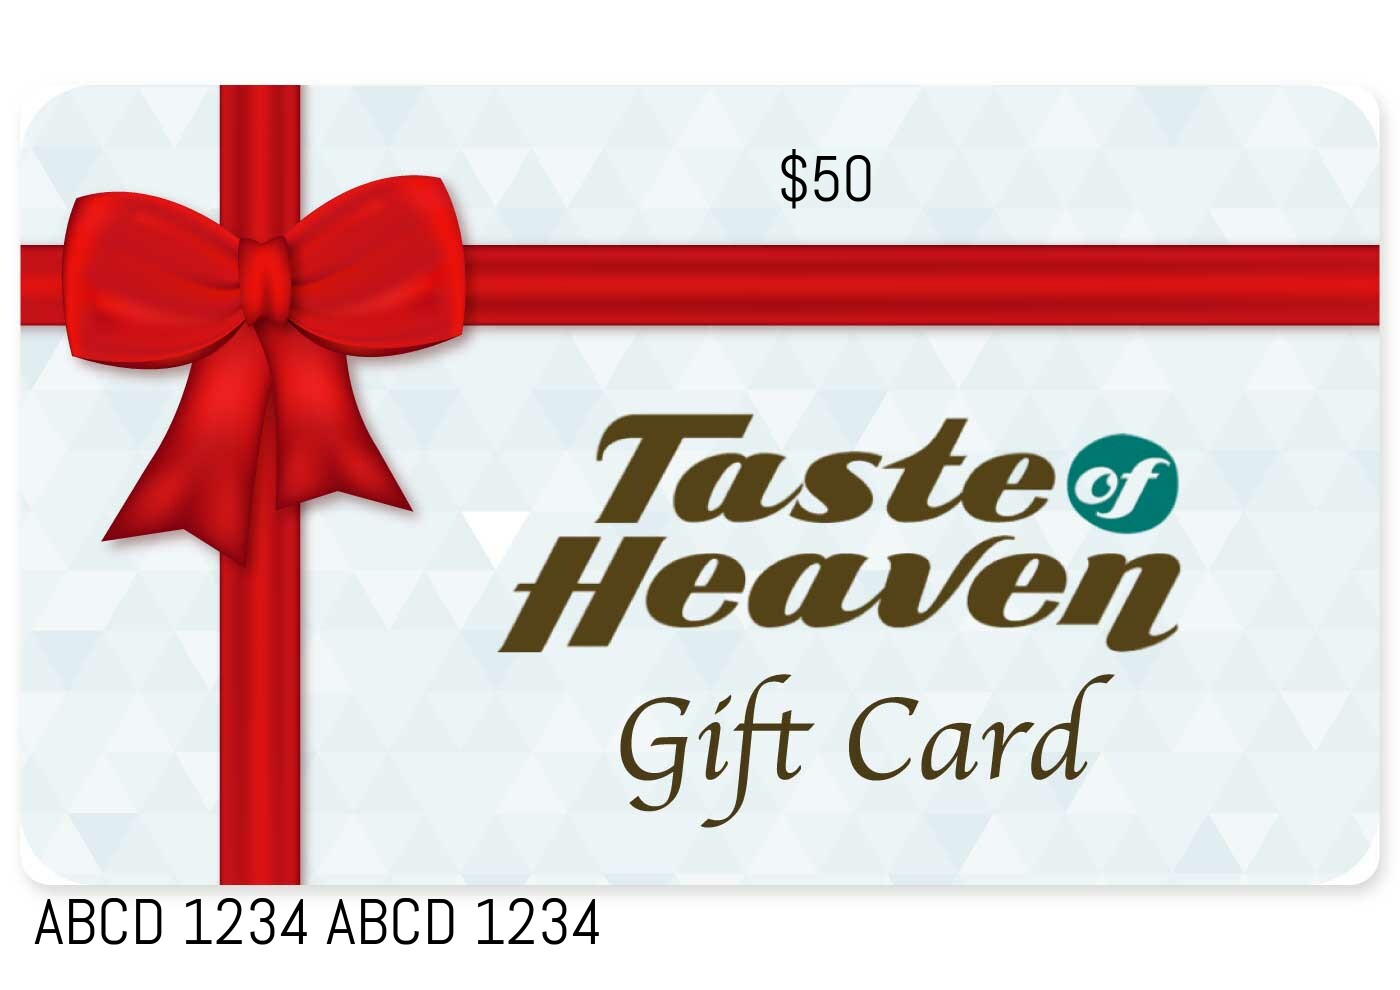 Taste of Heaven Gift Card